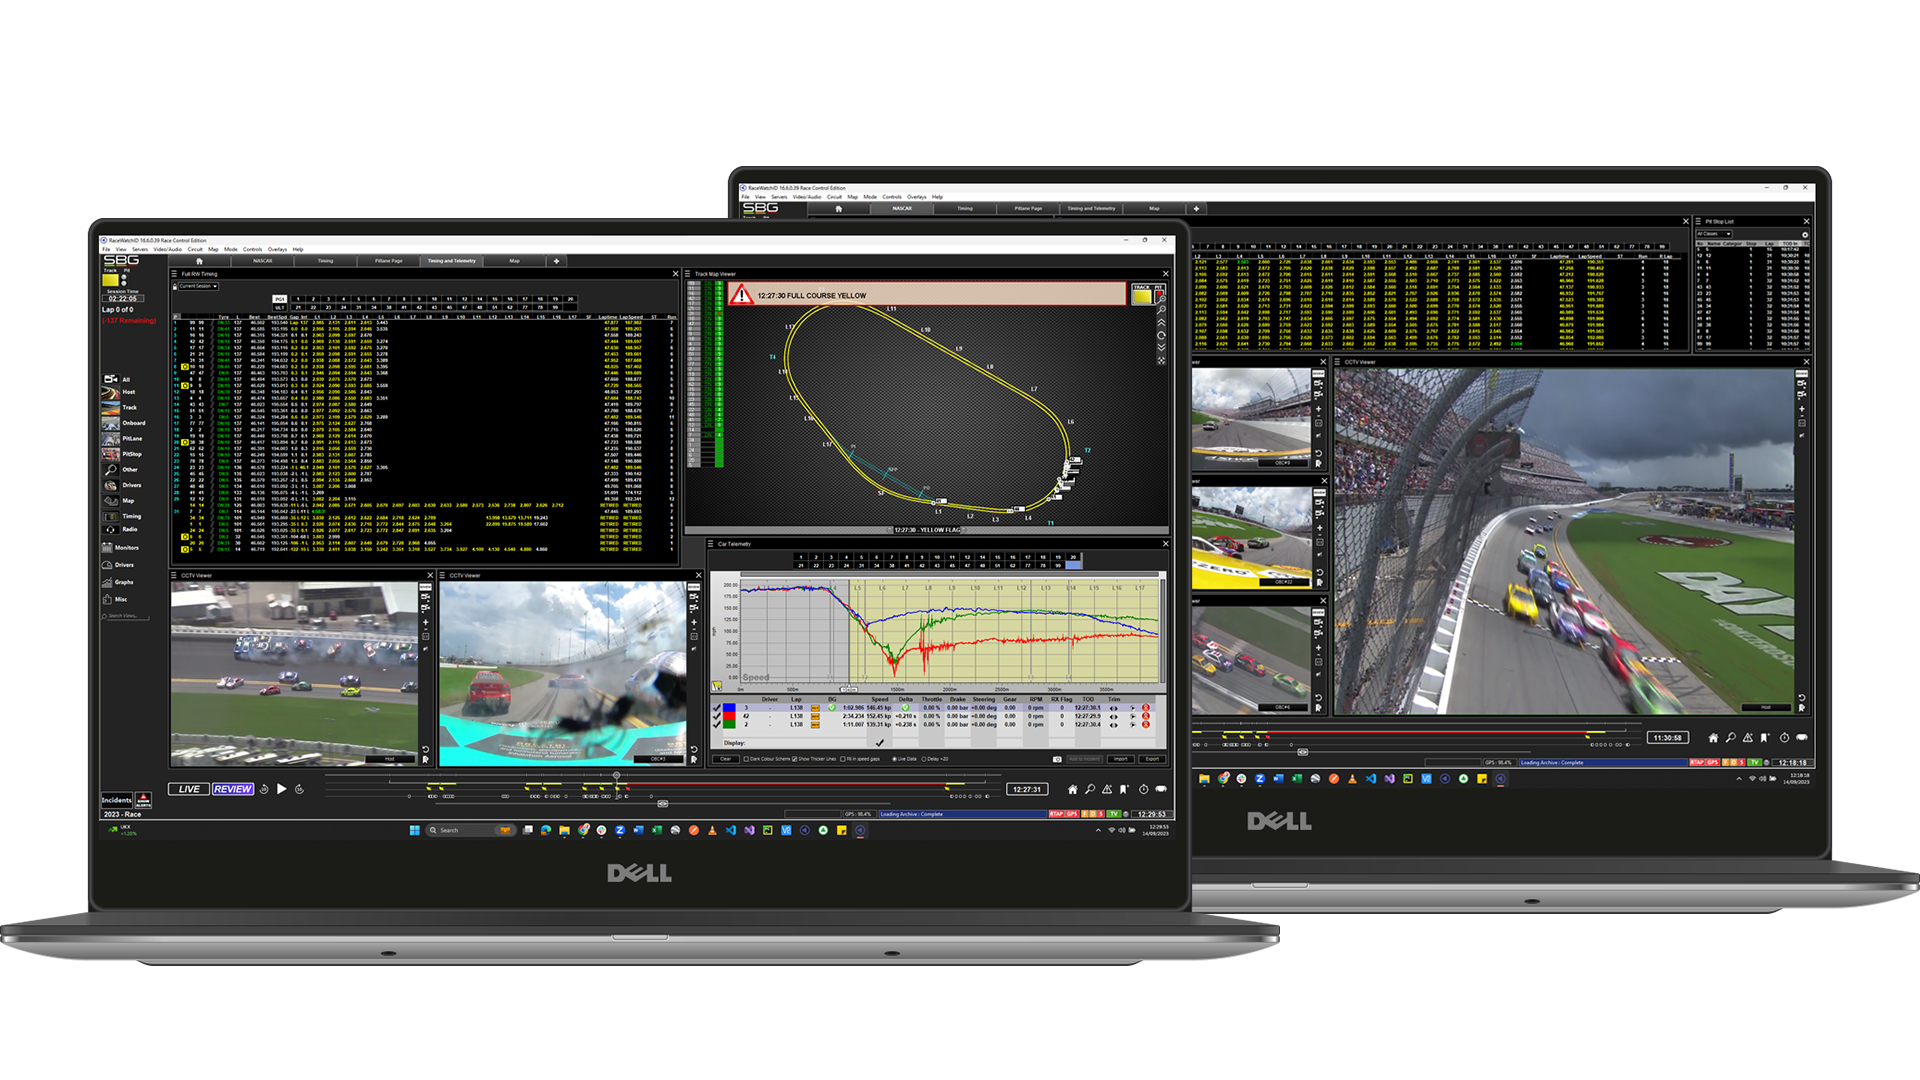 La suite RaceWatch de systèmes sophistiqués d'analyse de données, de visualisation, de vidéo et de stratégie est constamment utilisée par les organisateurs de courses et les équipes tout au long de la saison, tant sur la piste que dans les usines des équipes du monde entier.